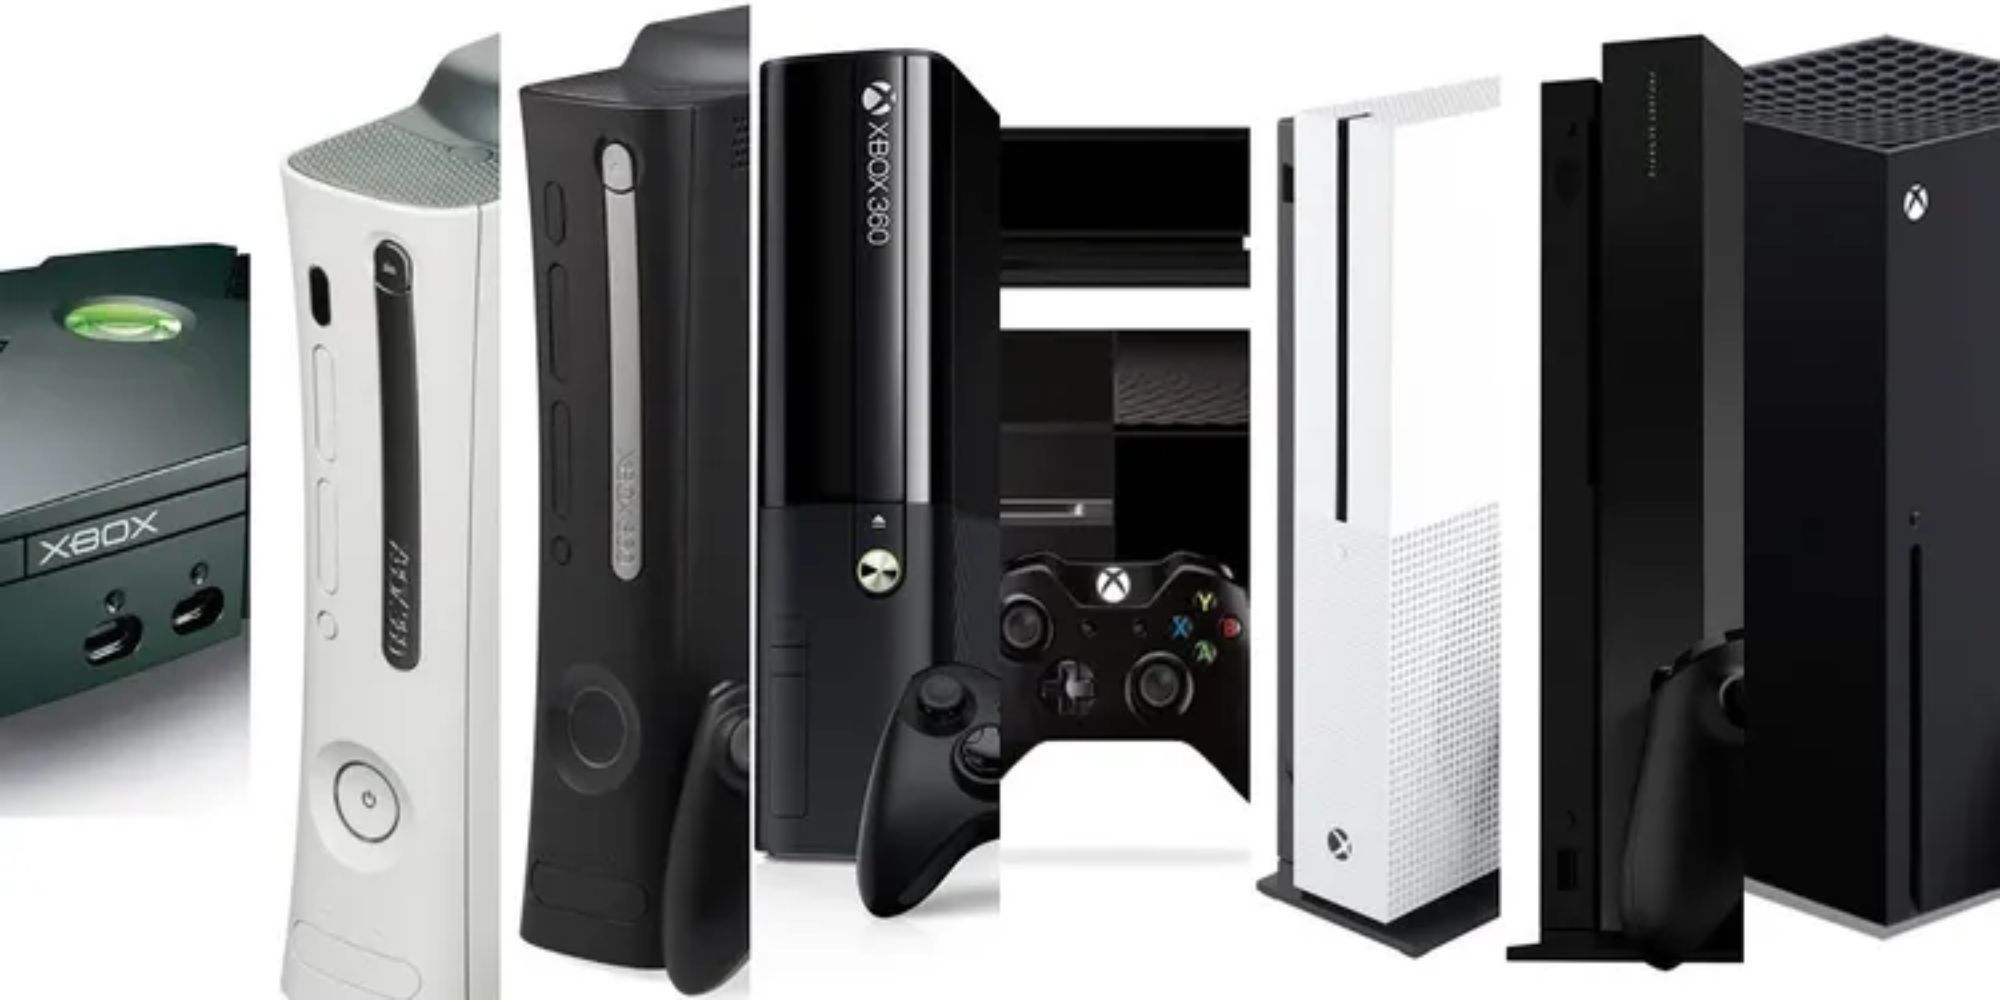 Einde Duidelijk maken Uitleg 10 Rarest Limited Edition Xbox Consoles